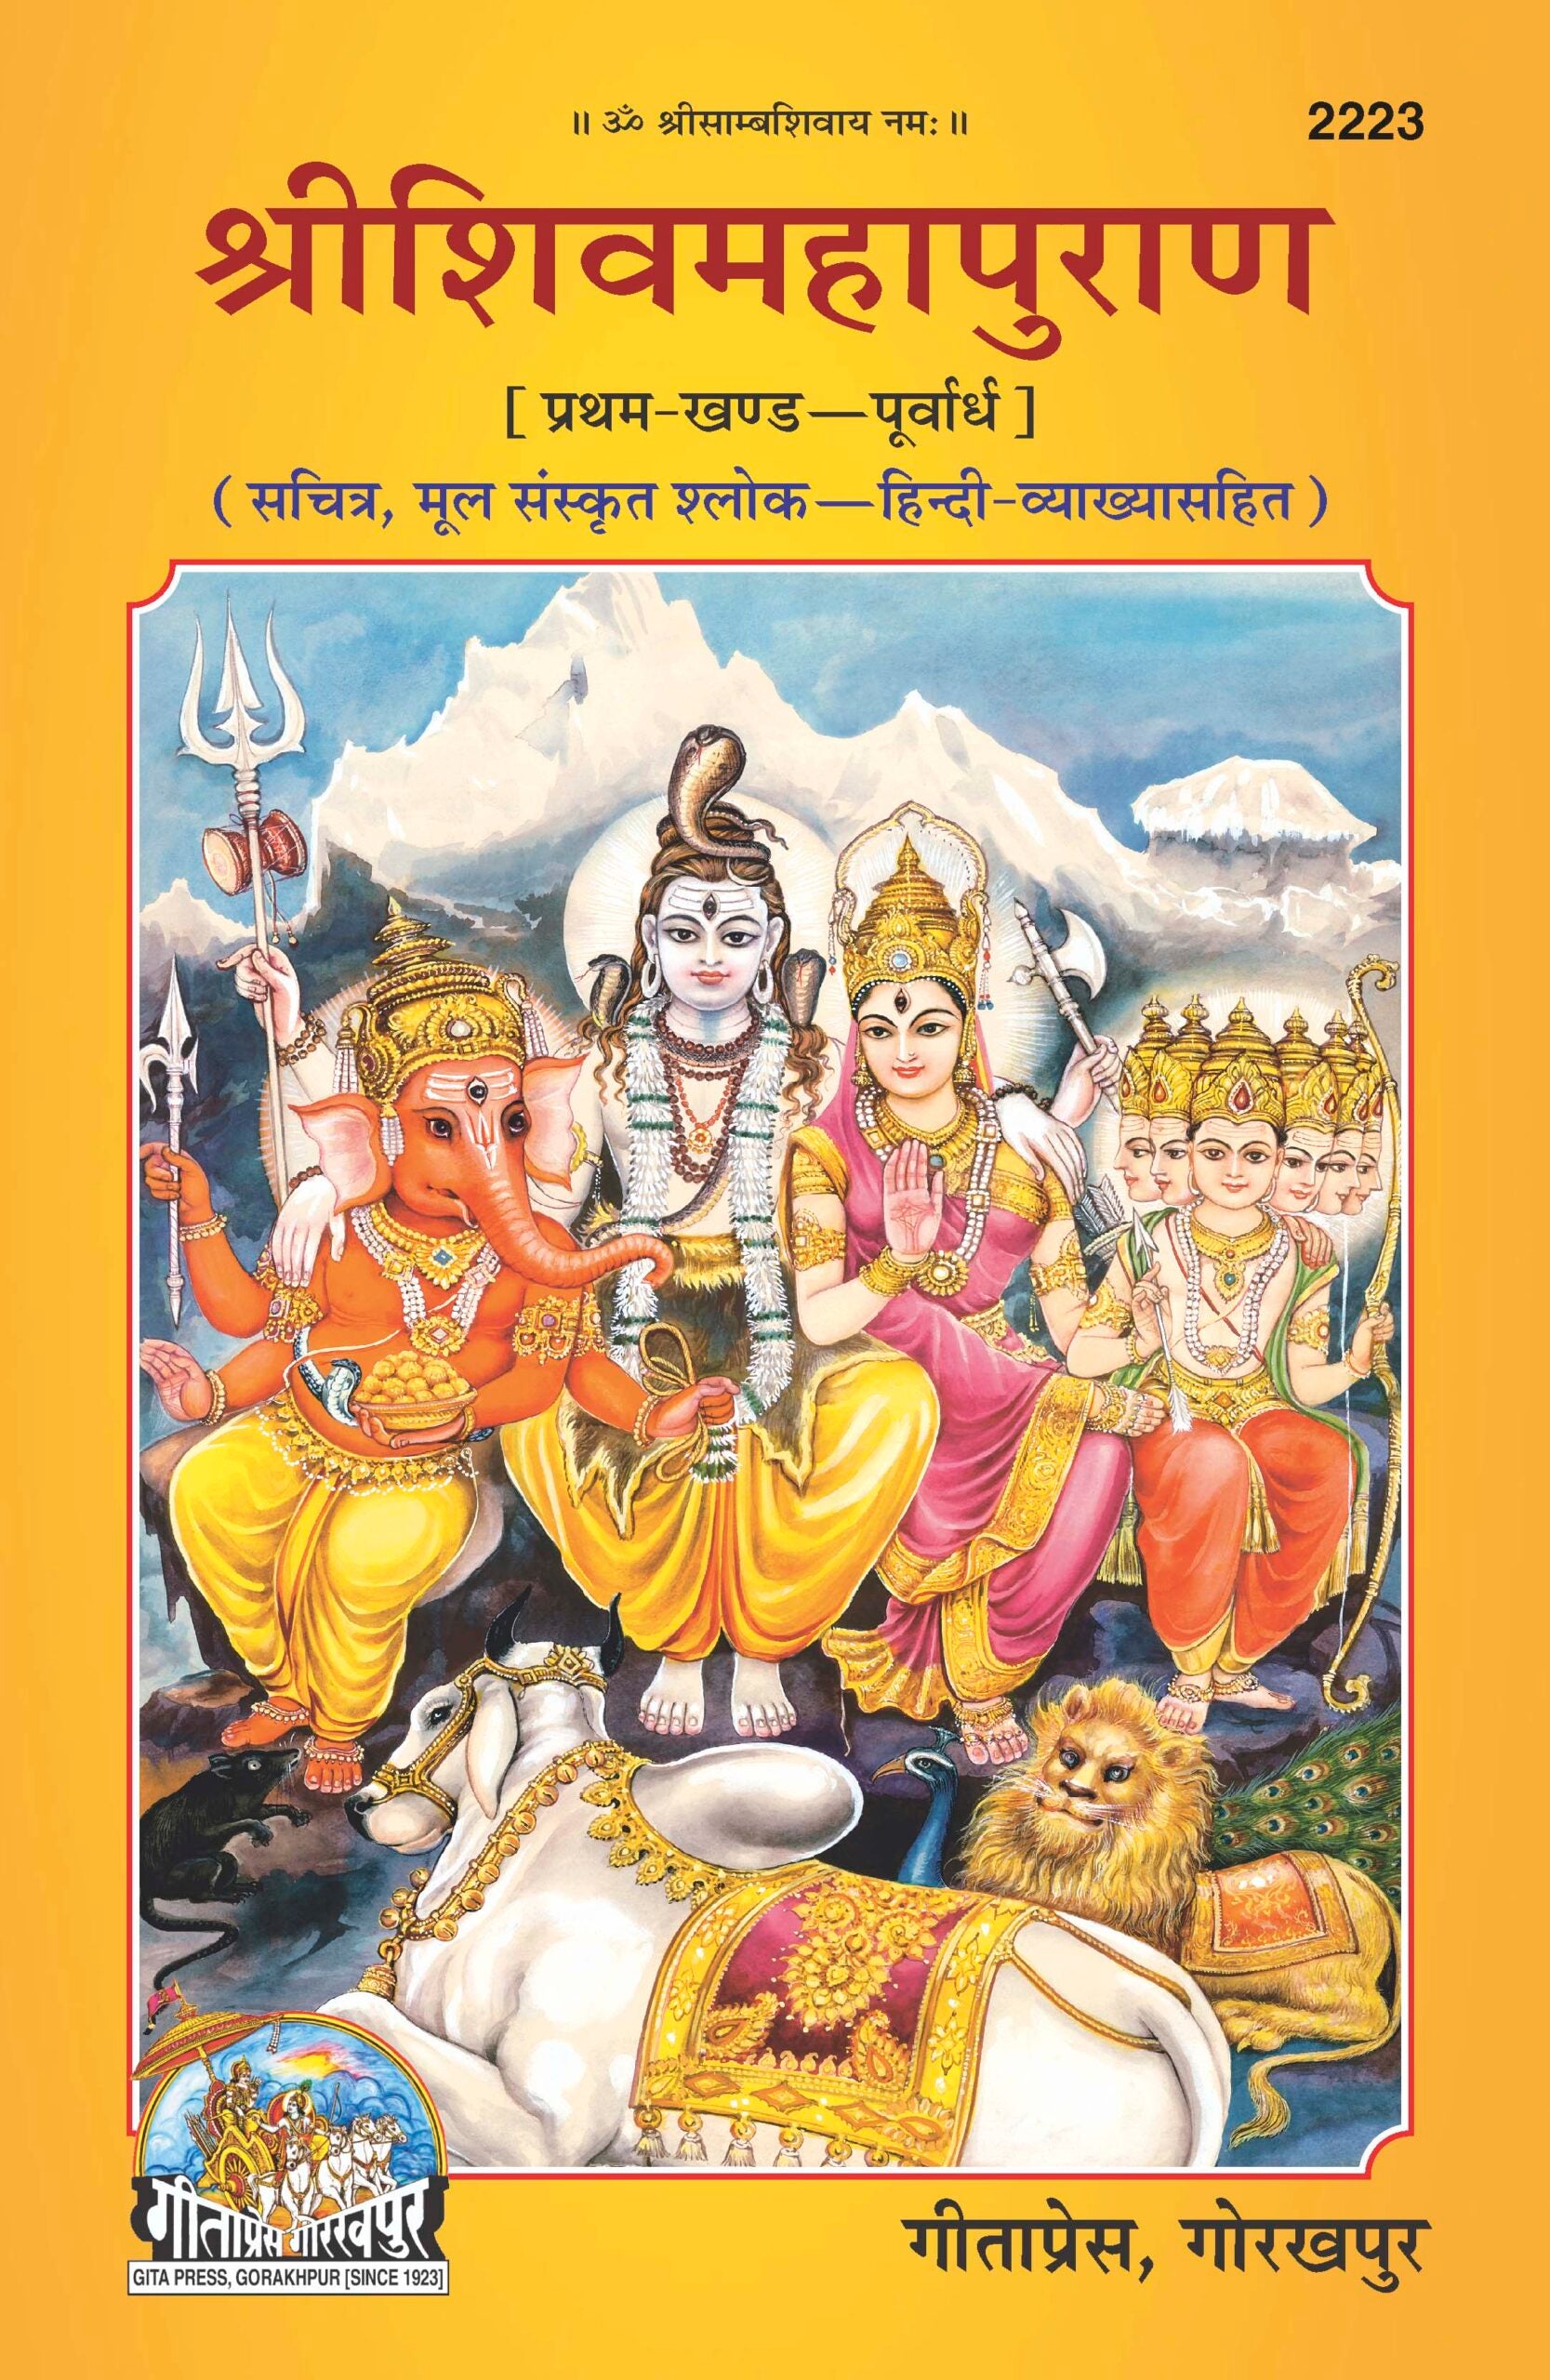 SANATAN  Shri Shiv Mahapuran Part 1 (With pictures and Hindi translation) by Gita Press